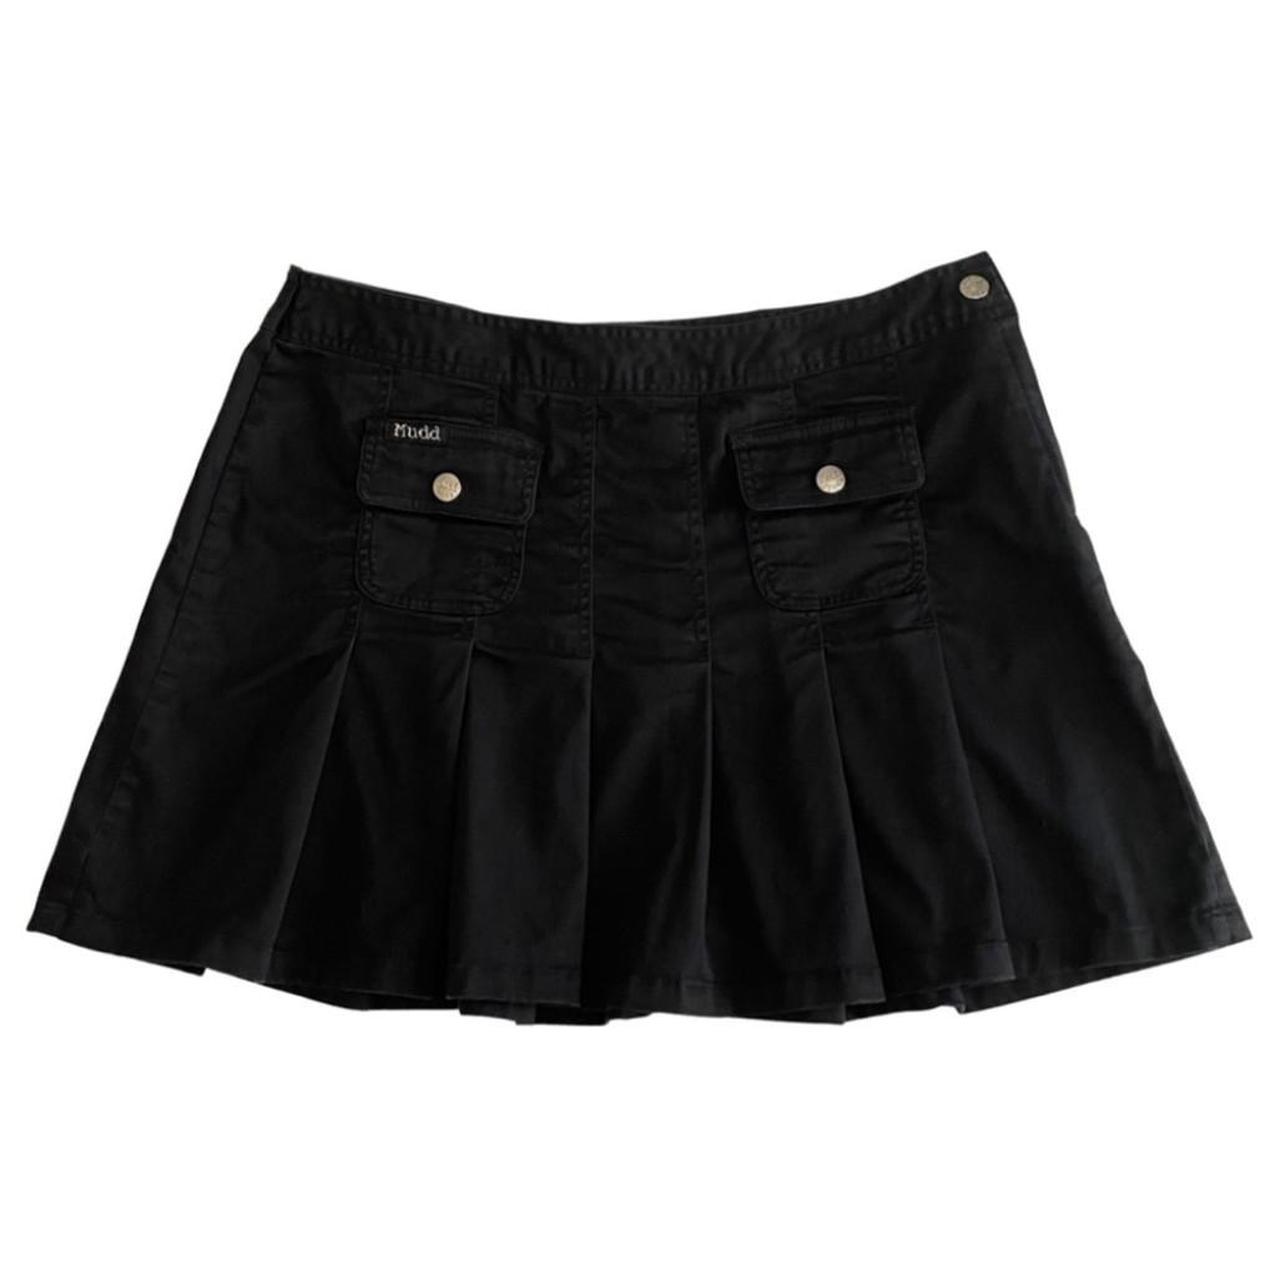 Vintage Y2K Mudd Pleated Mini Skirt in black.... - Depop